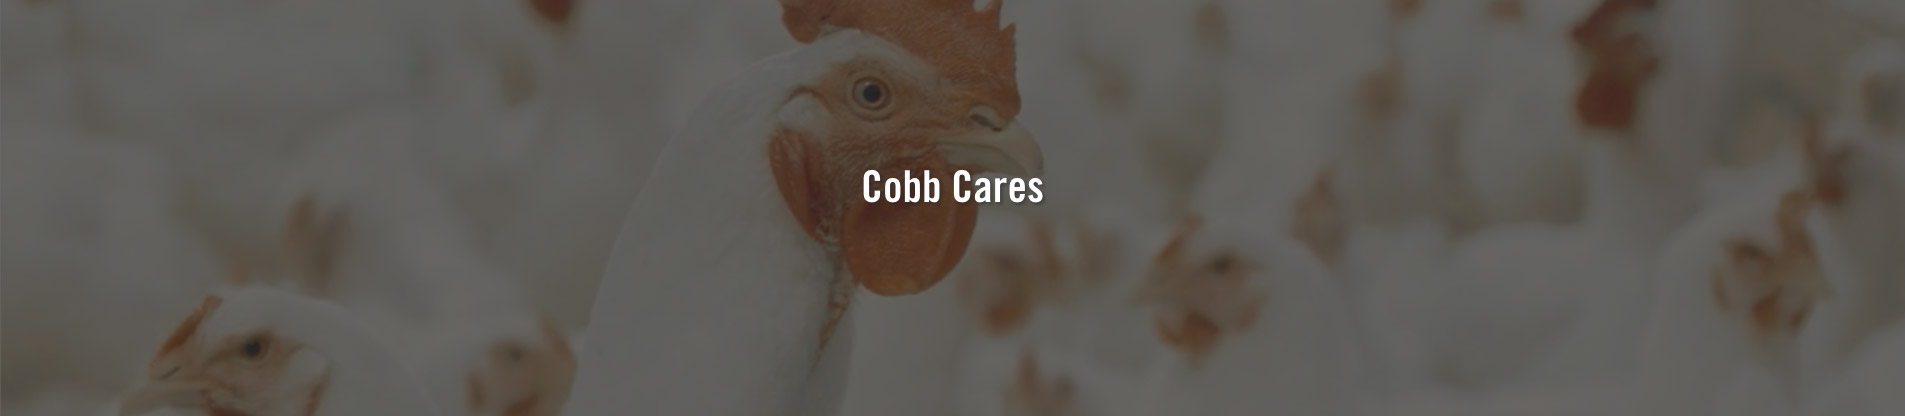 Cobb Cares - Cobb